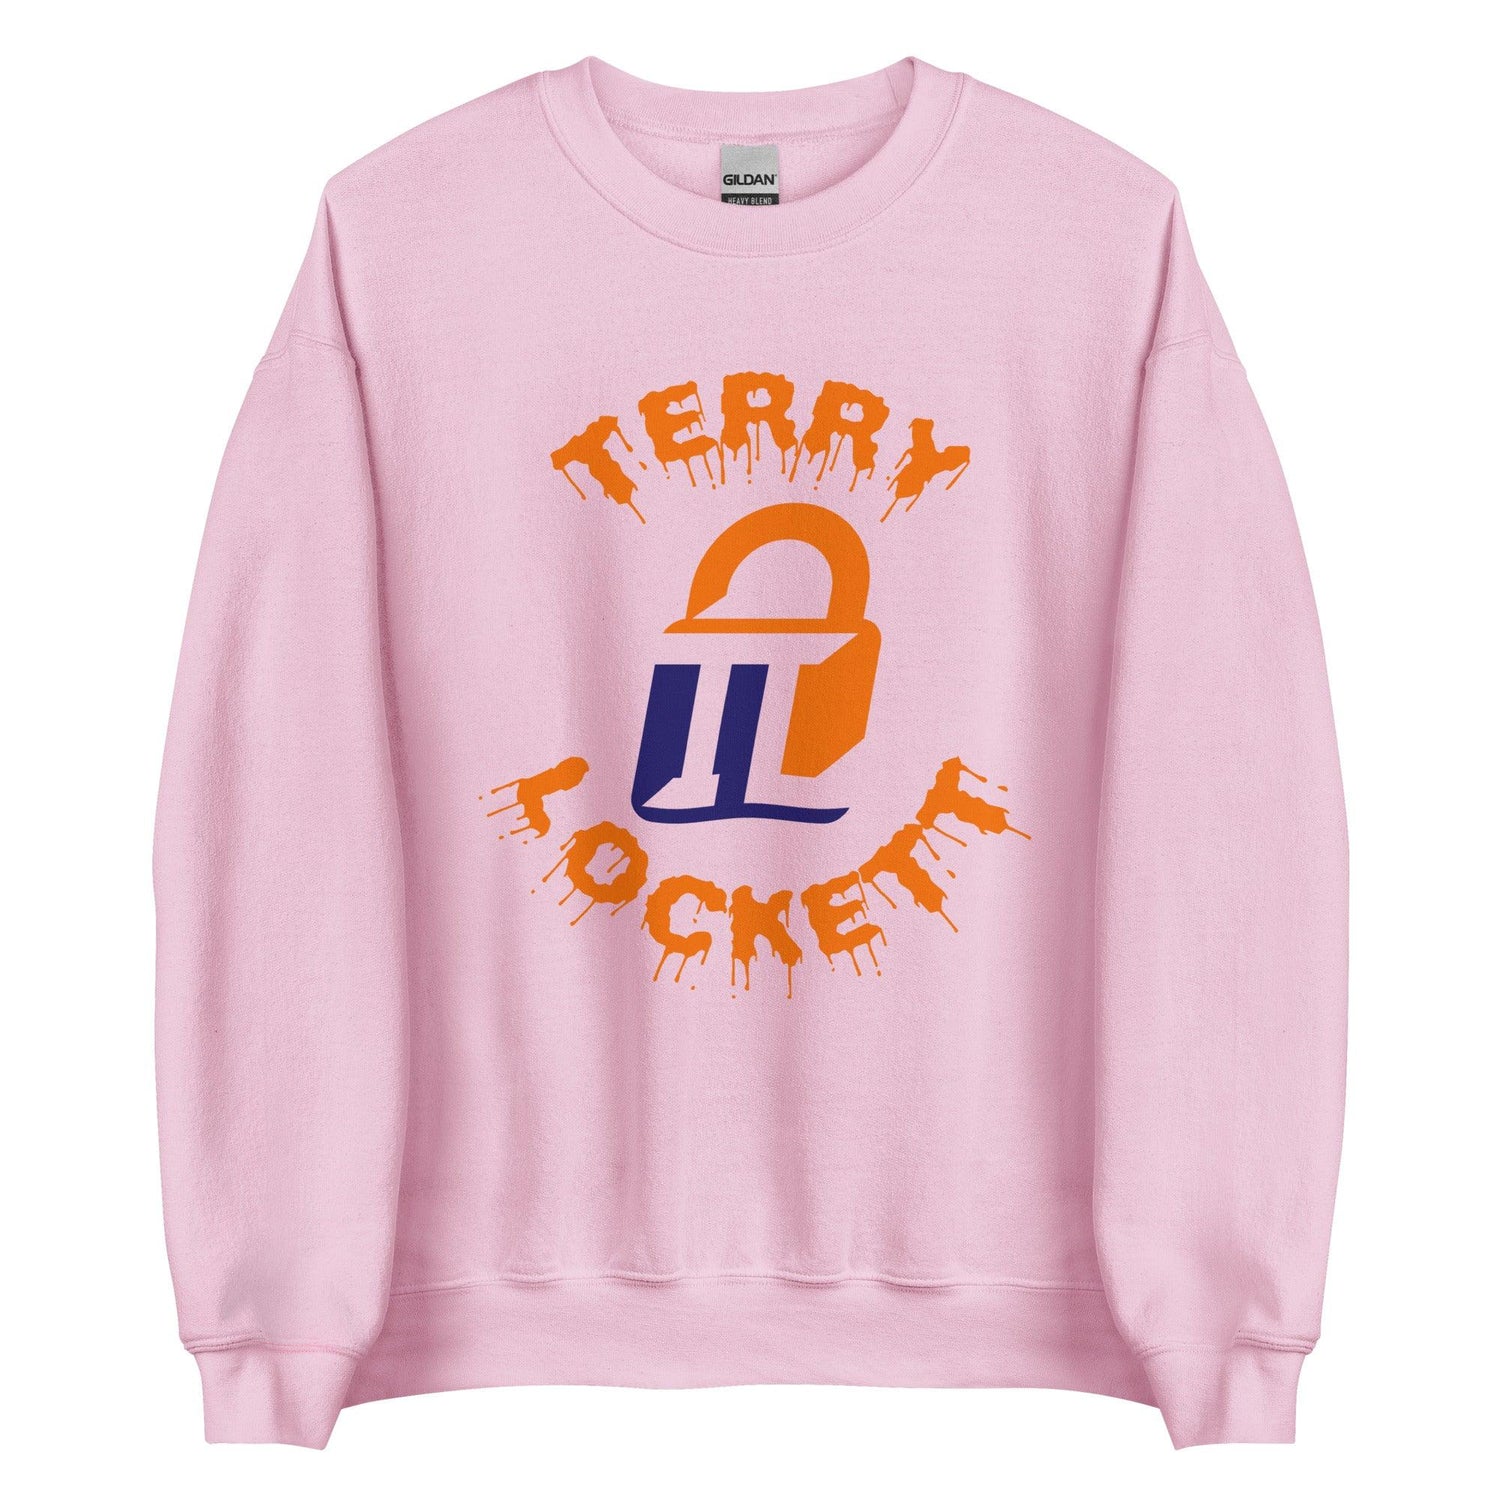 Terry Lockett "Elite" Sweatshirt - Fan Arch